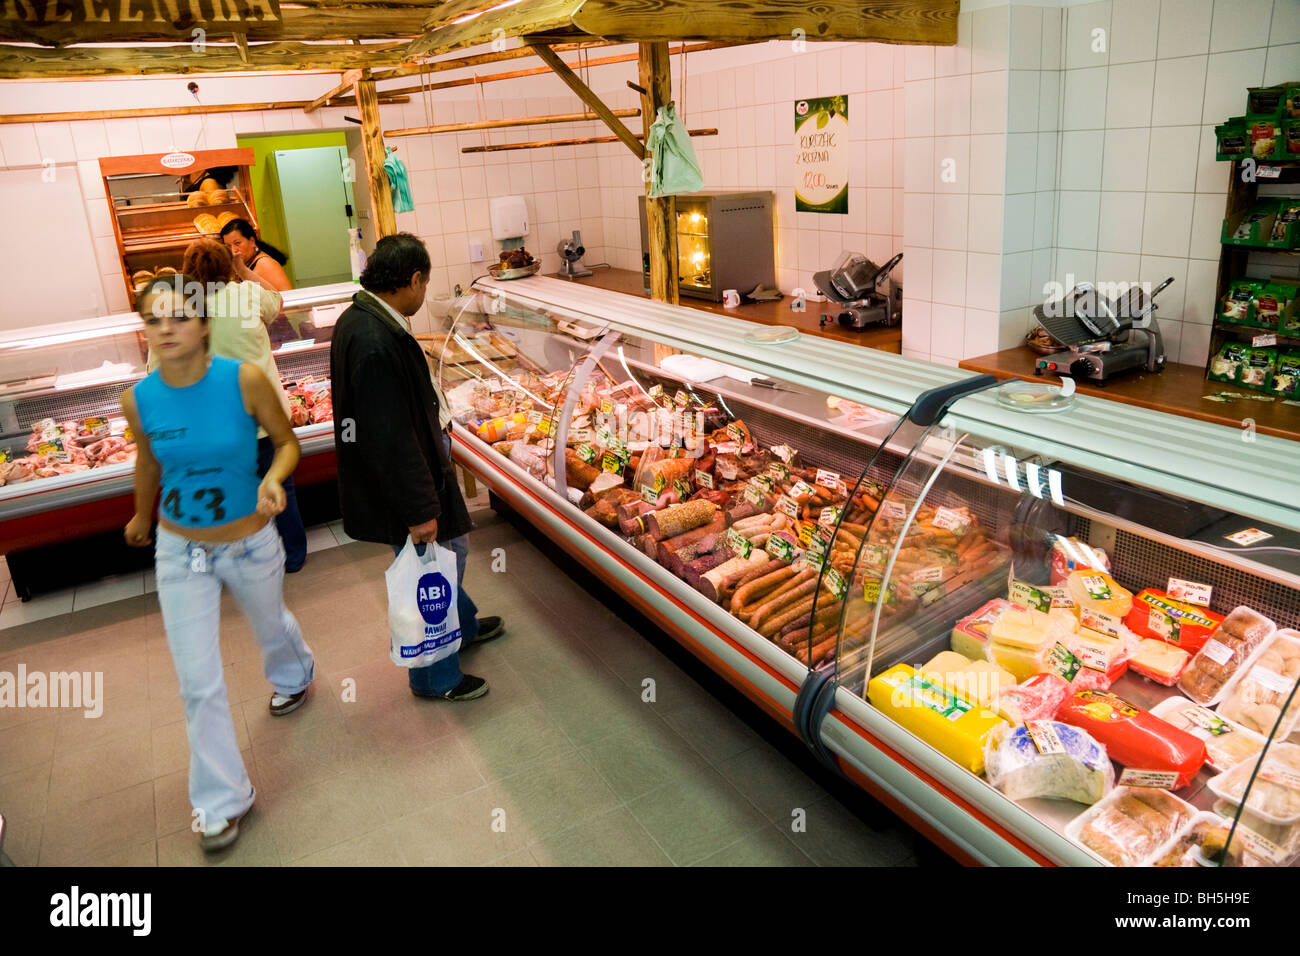 Metzgerei Shop Interieur – und Fleisch in Kühler Schränke in Gleiwitz, Oberschlesien, Polen angezeigt. Stockfoto